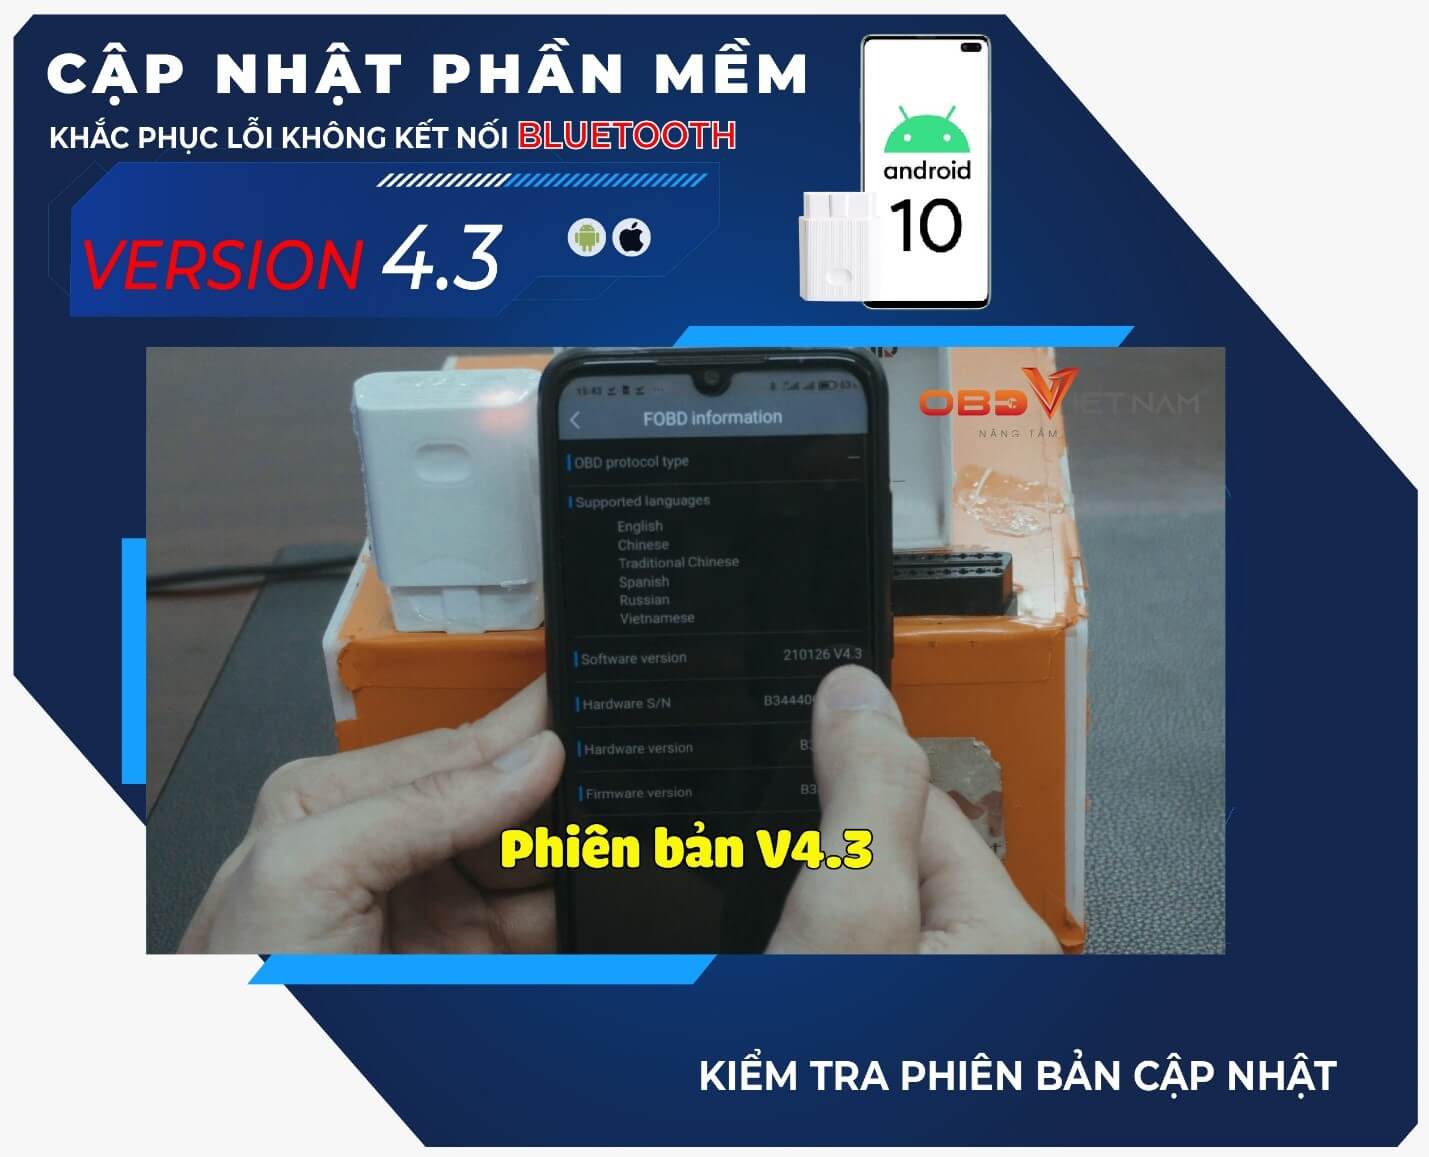 cap-nhat-phan-mem-v4.3-cho-may-chan-doan-fobd6